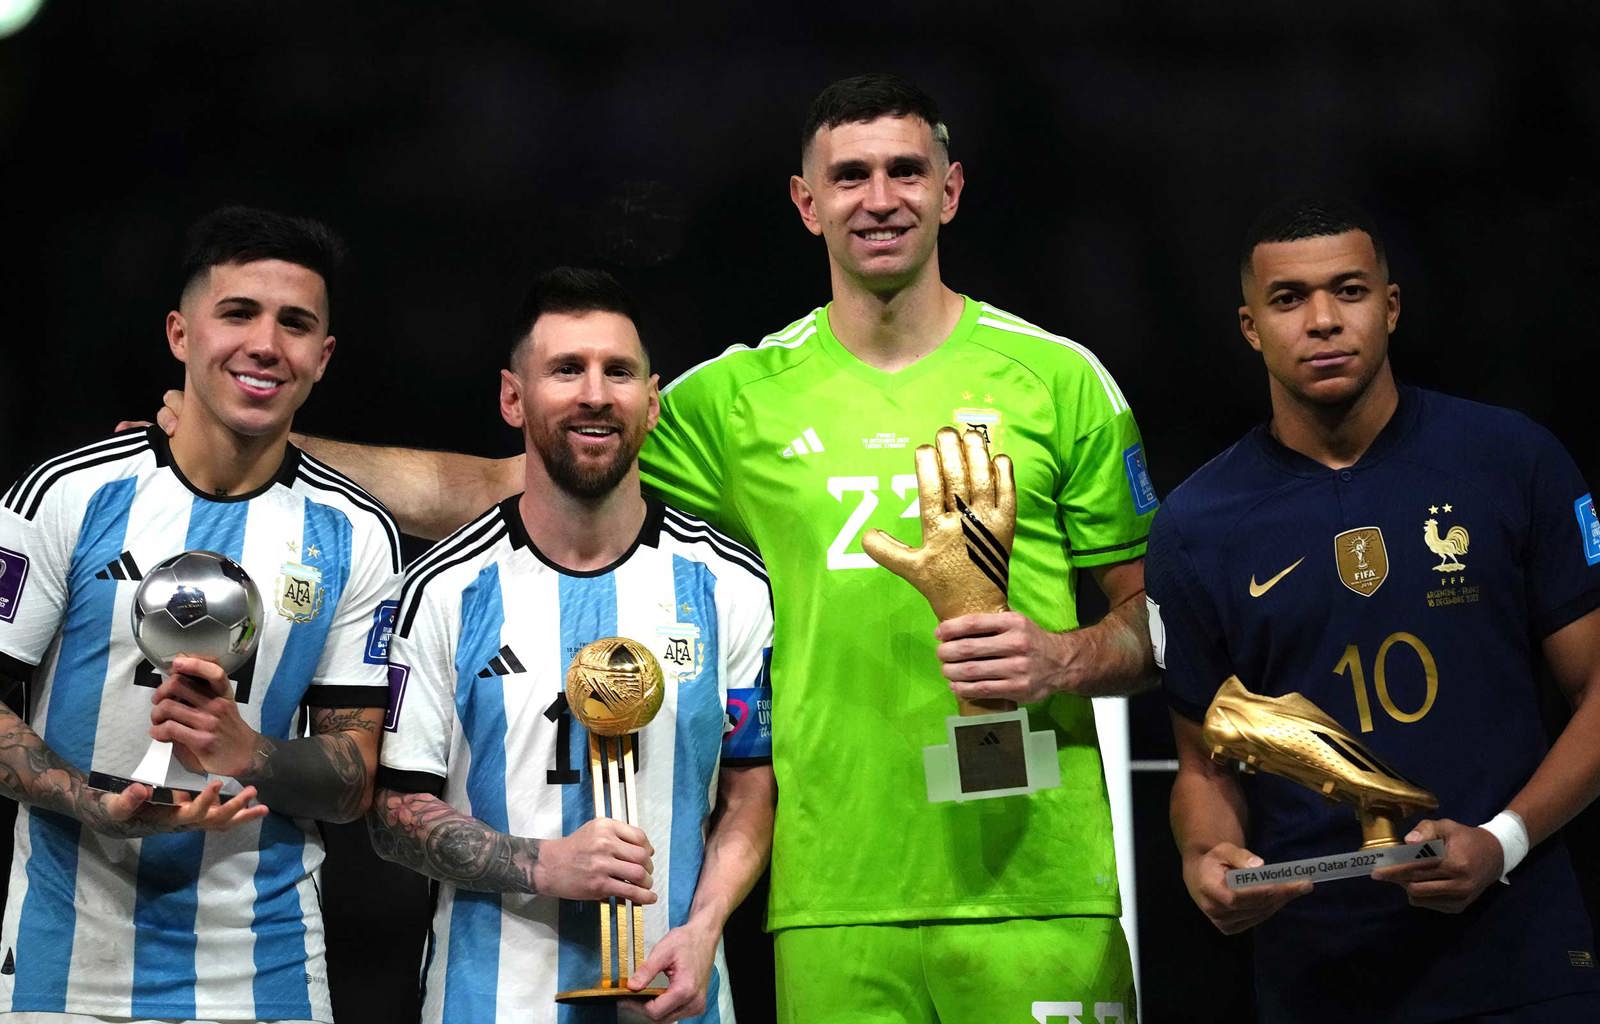 Des joueurs récompensés par des prix individuels lors de la Coupe du Monde  2022 - FIFPRO World Players' Union